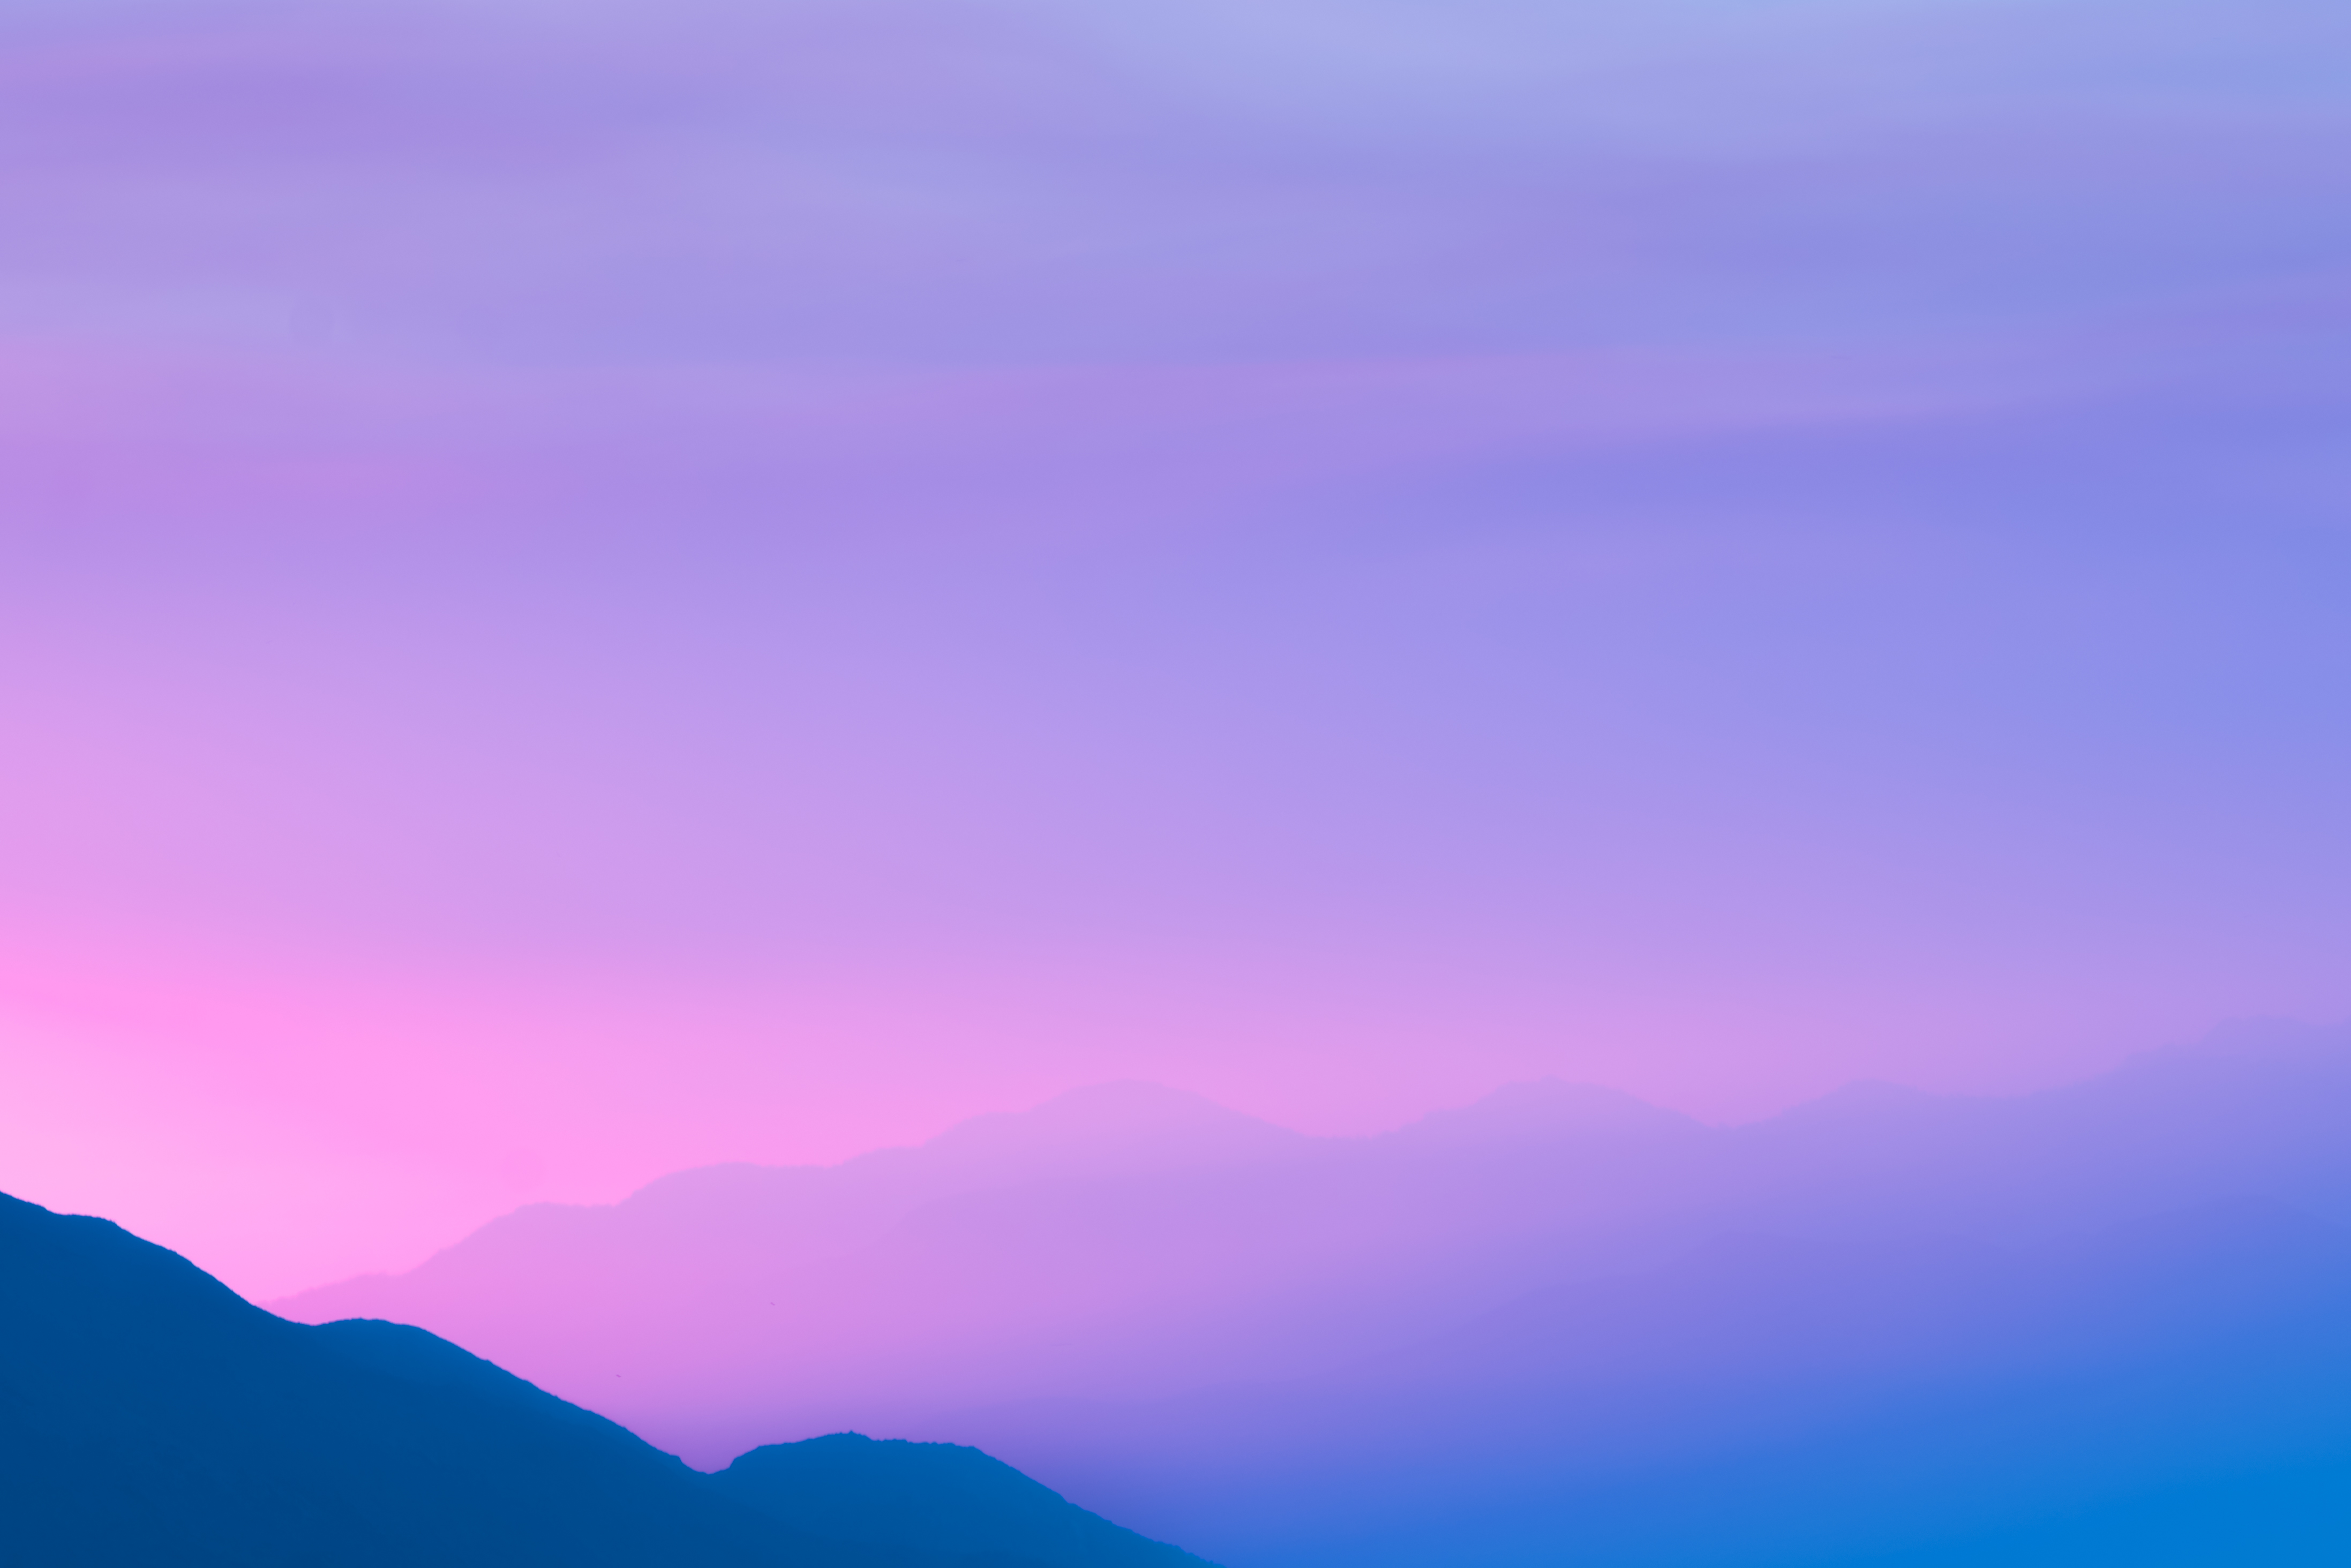 #landscape, #purple, #blue, #nature, #mountains, #sky